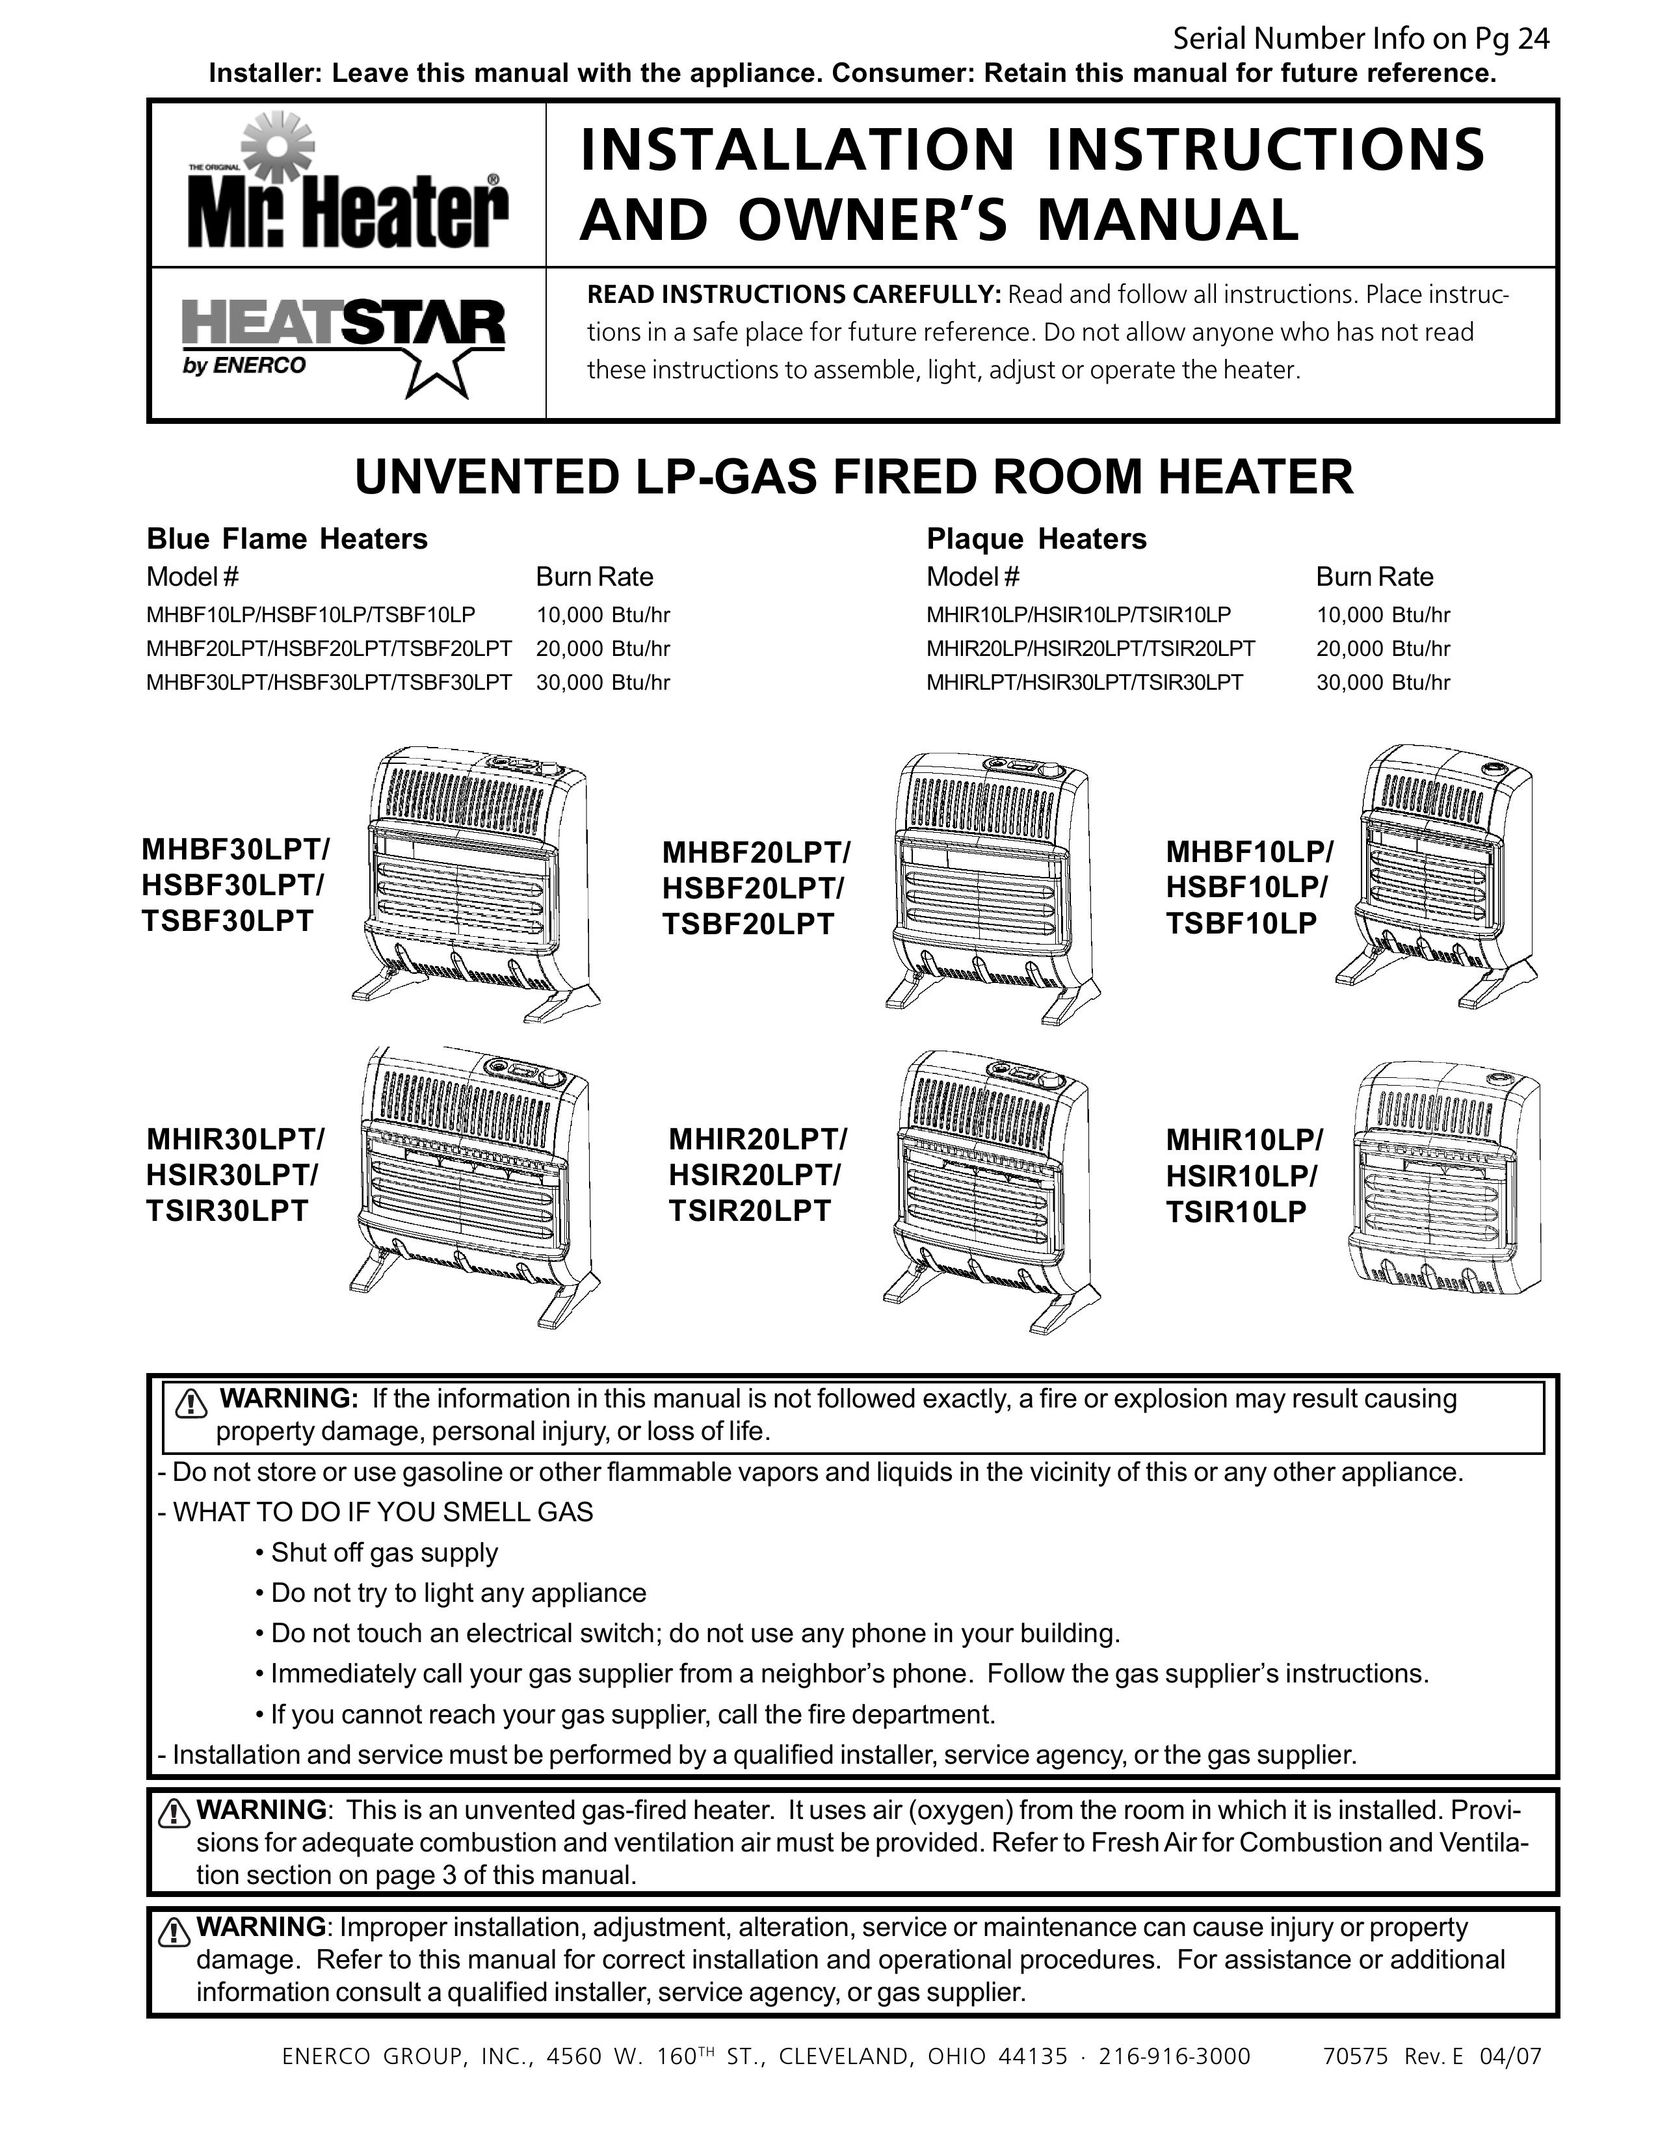 Enerco HSBF20LPT Work Light User Manual